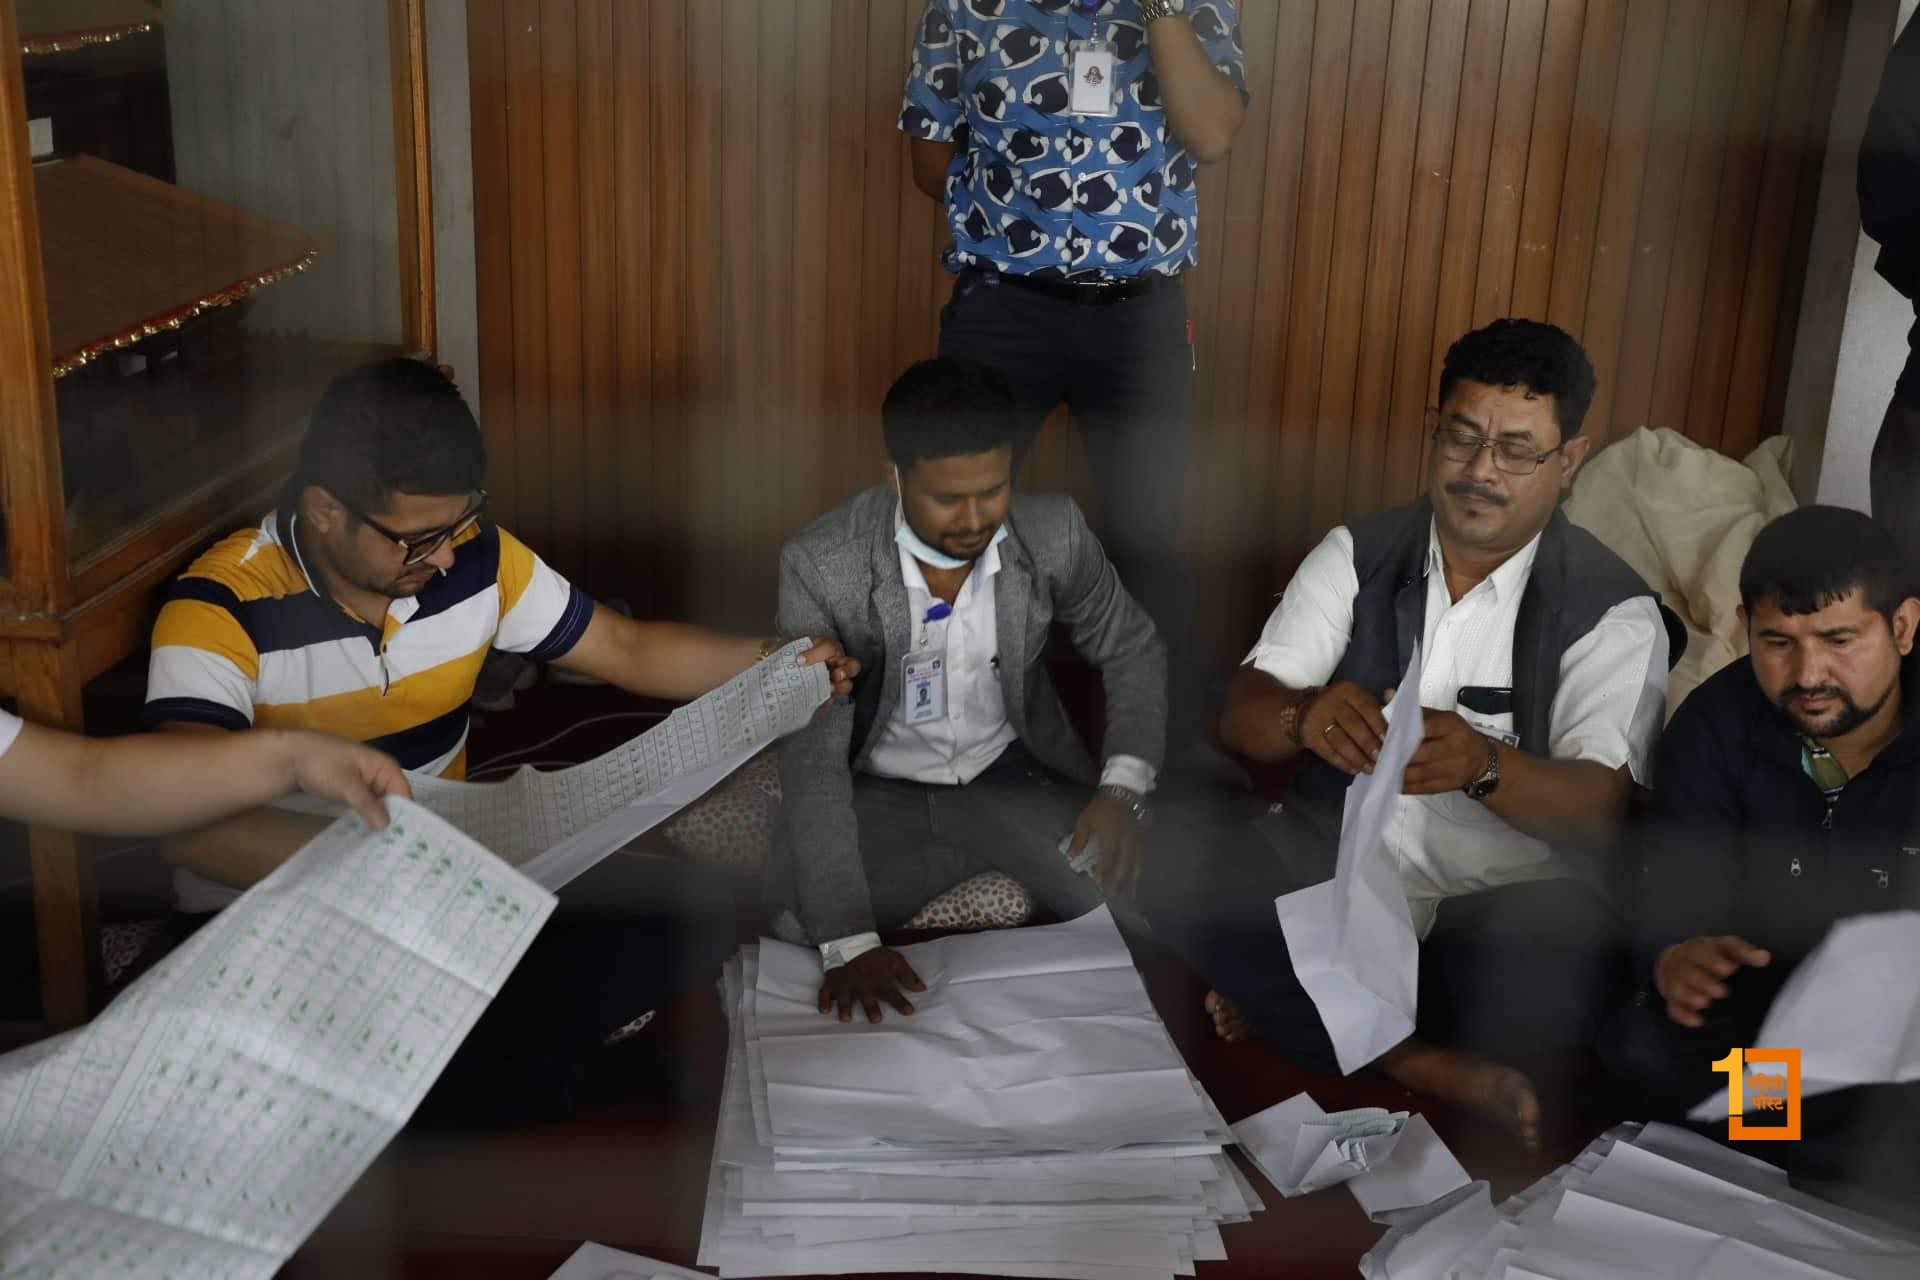 काठमाडौं महानगरमा मतगणना सुस्त गतिमा, ३ घण्टामा १०० मत गणना